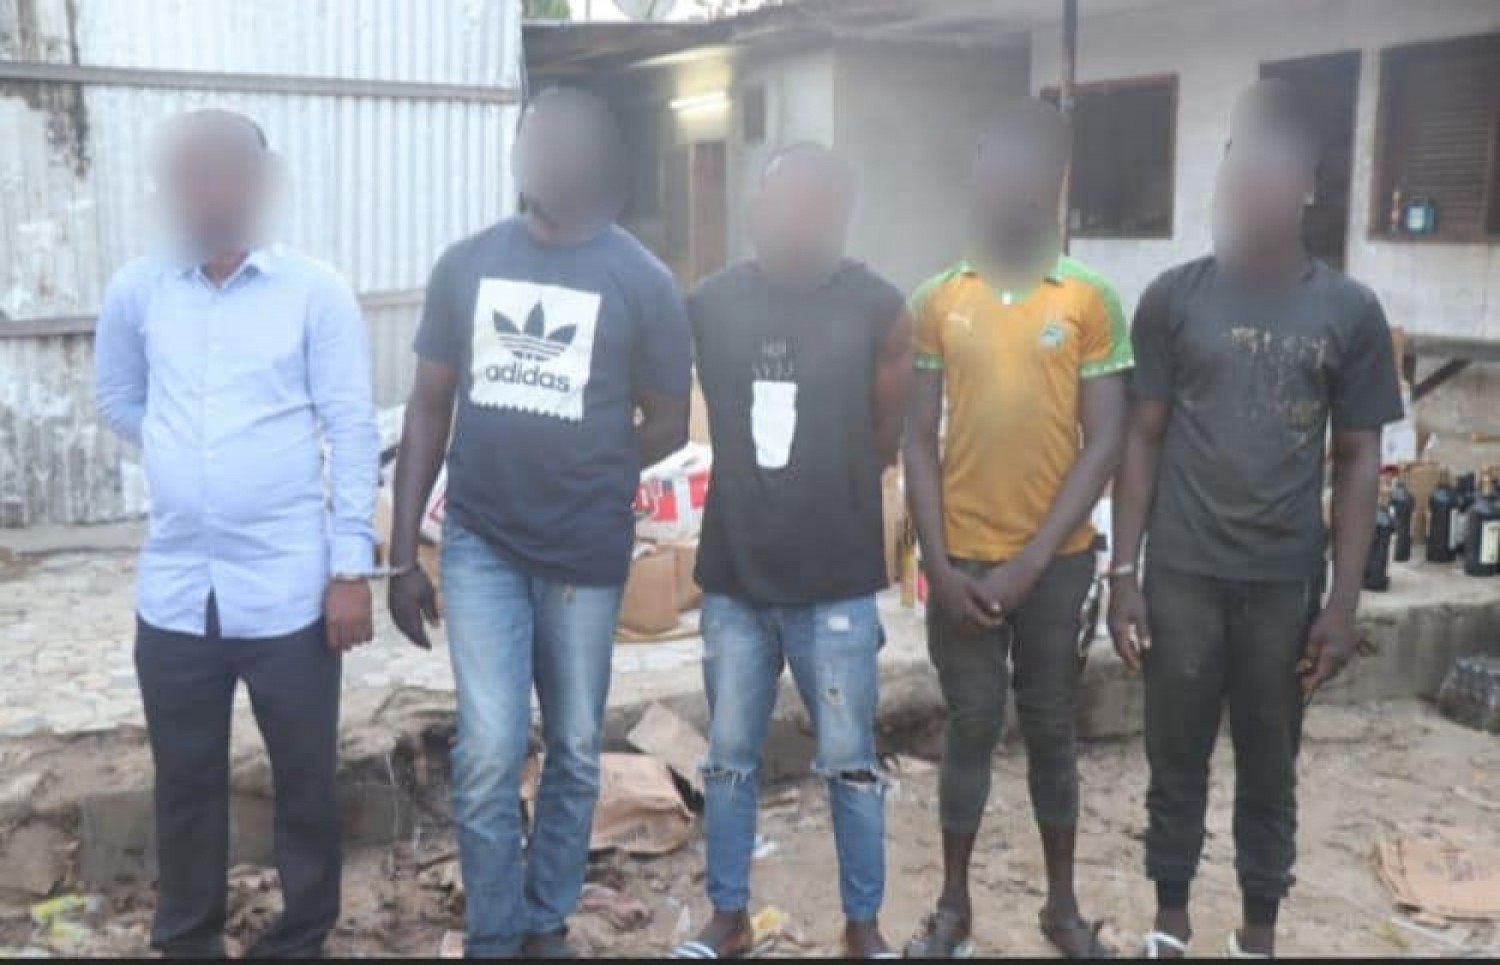 Côte d'Ivoire : Lutte contre la contrefaçon, la Gendarmerie démantèle un entrepôt de boissons frelatées à Abobo, le gérant et 04 collaborateurs interpellés